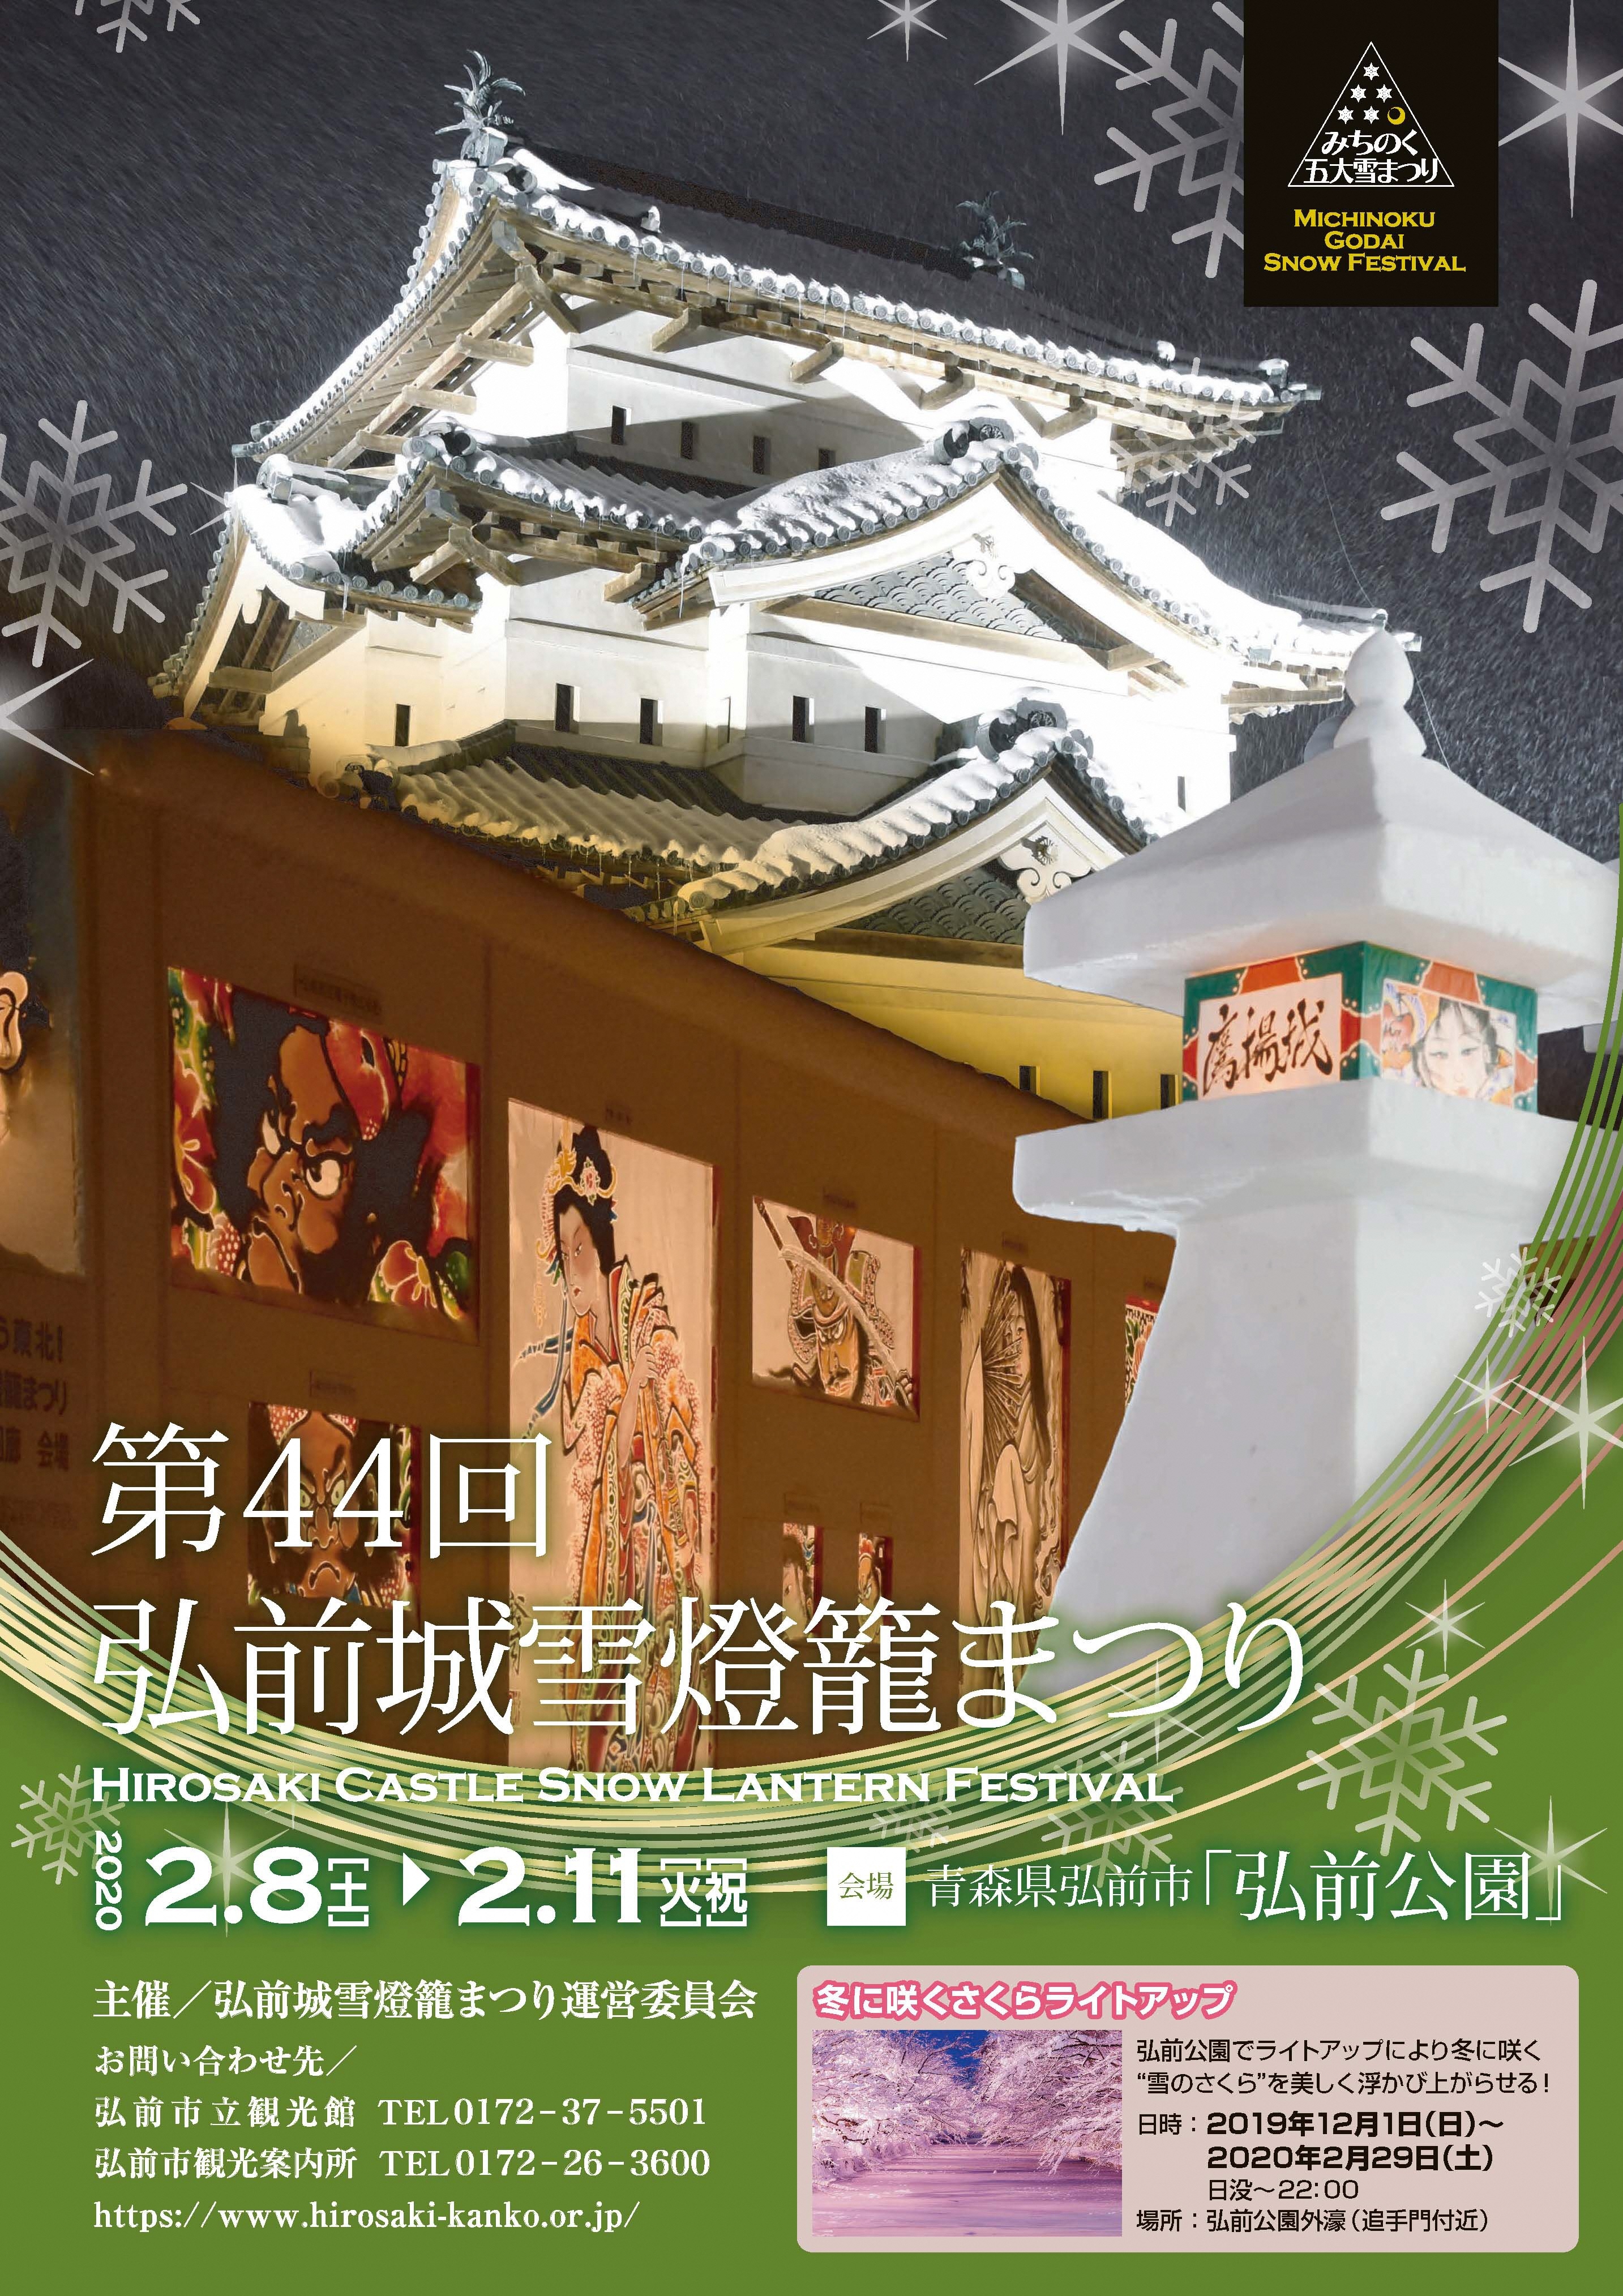 みちのく5大雪まつり 青森県弘前市にて 2月8日から11日まで 弘前城雪燈籠まつり を開催 弘前市のプレスリリース